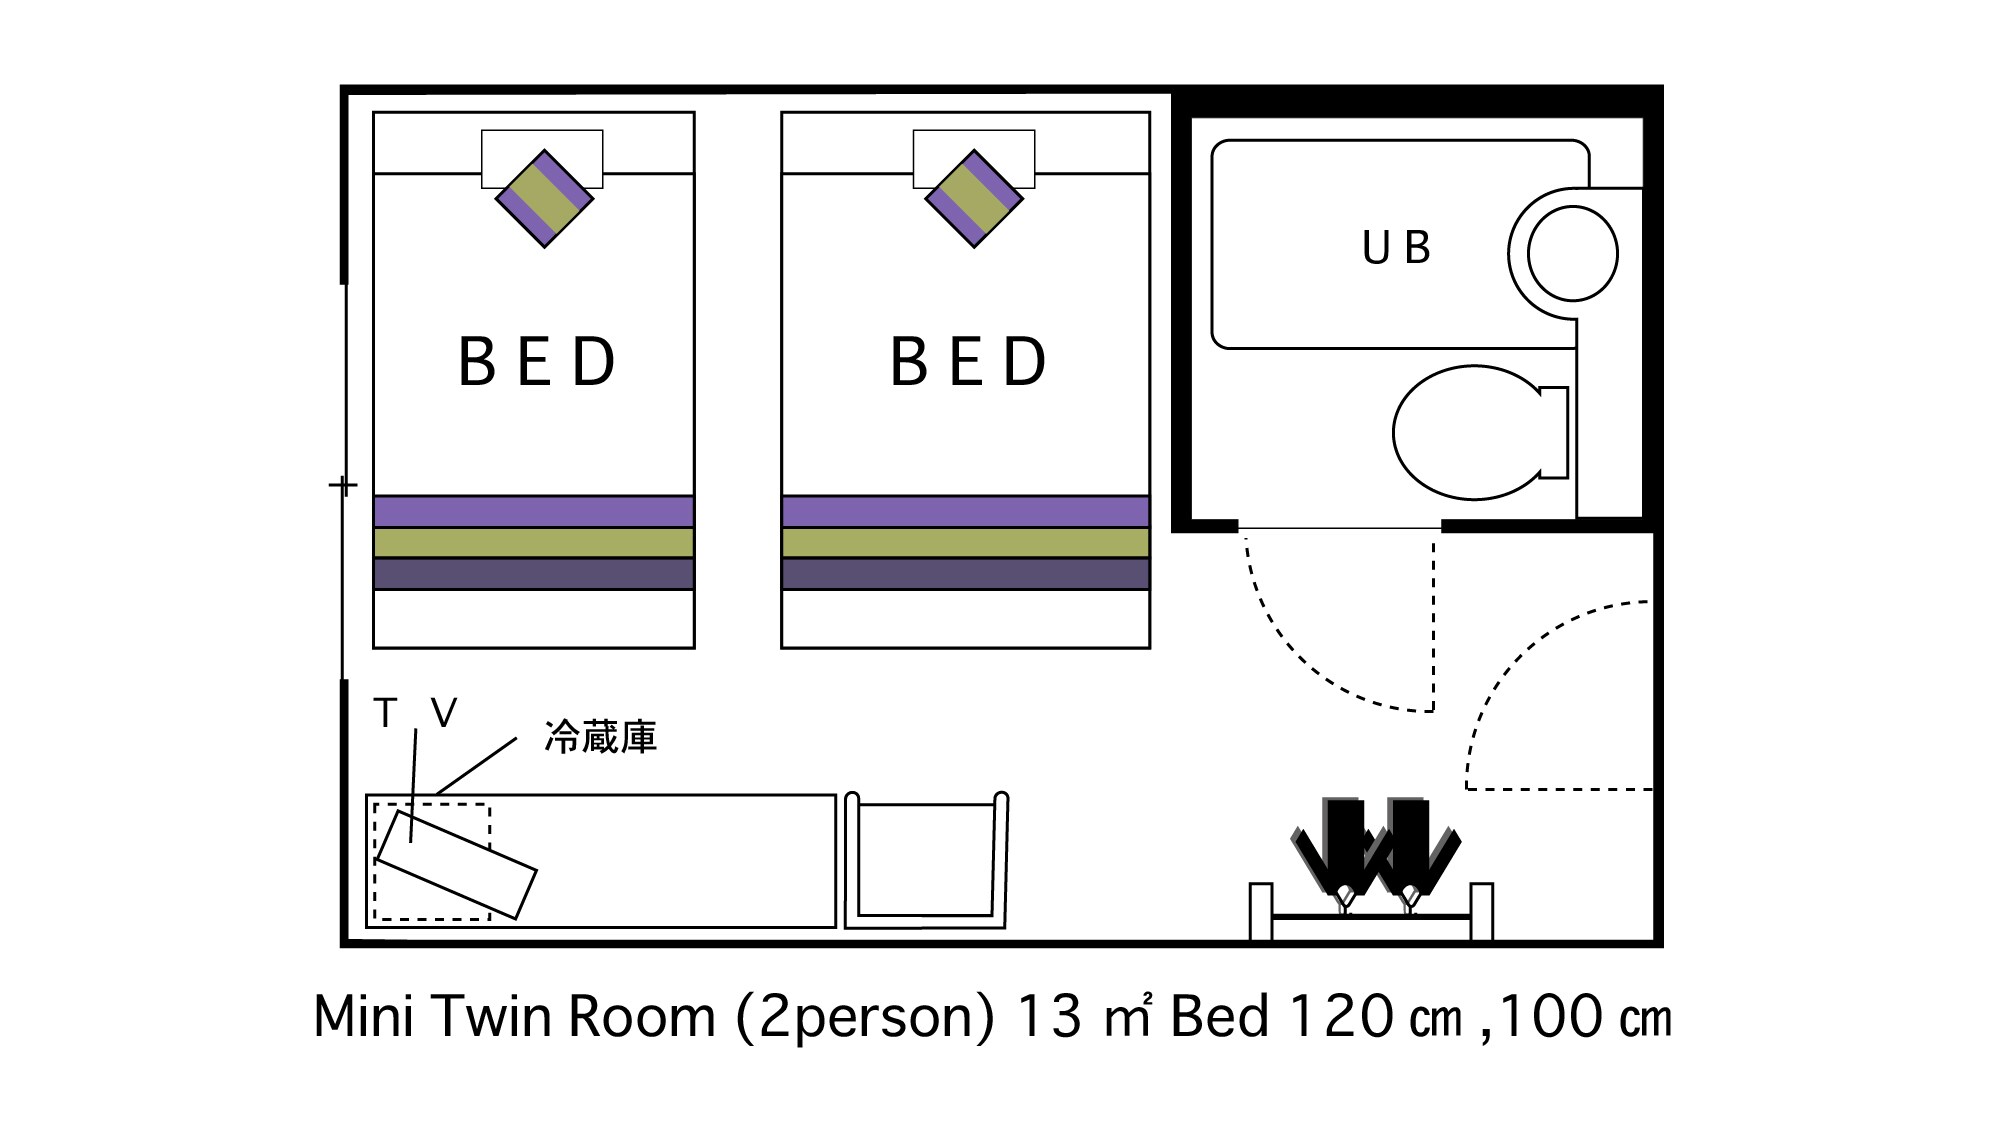 ห้องเตียงแฝดสำหรับผู้ใหญ่ 2 คน